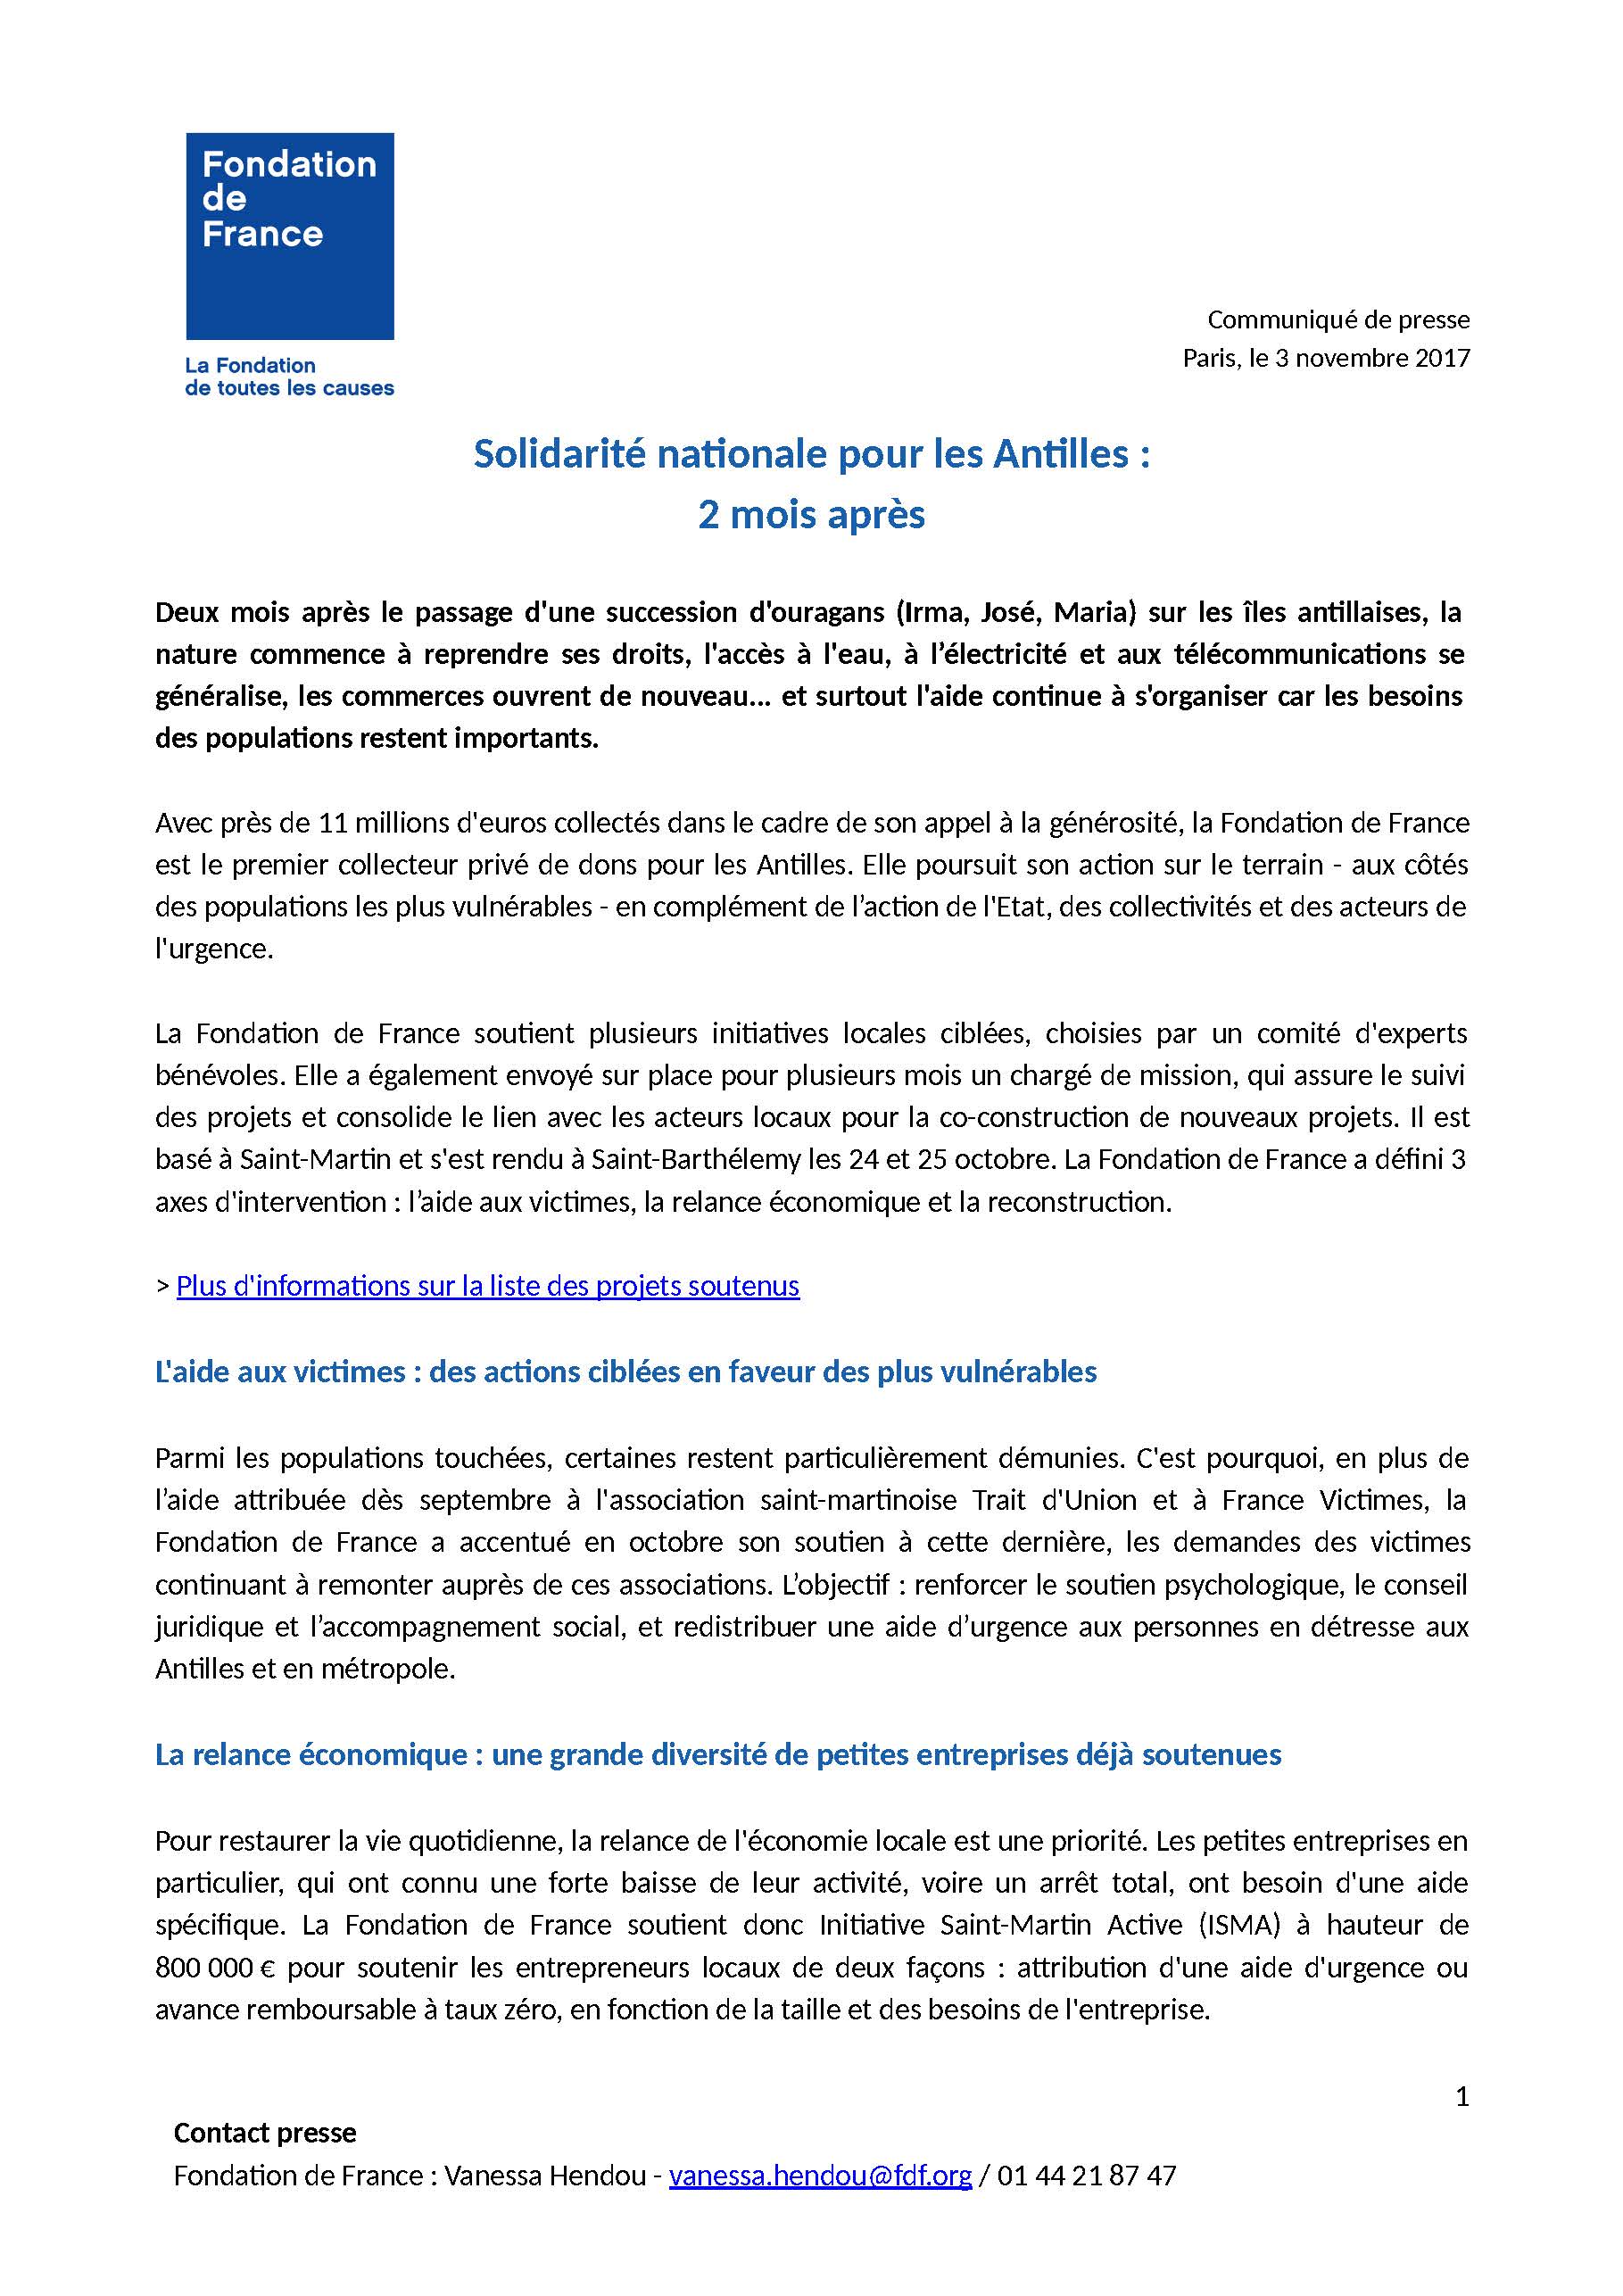 cp-solidarite-antilles-2-mois-fondation-de-france_page_1